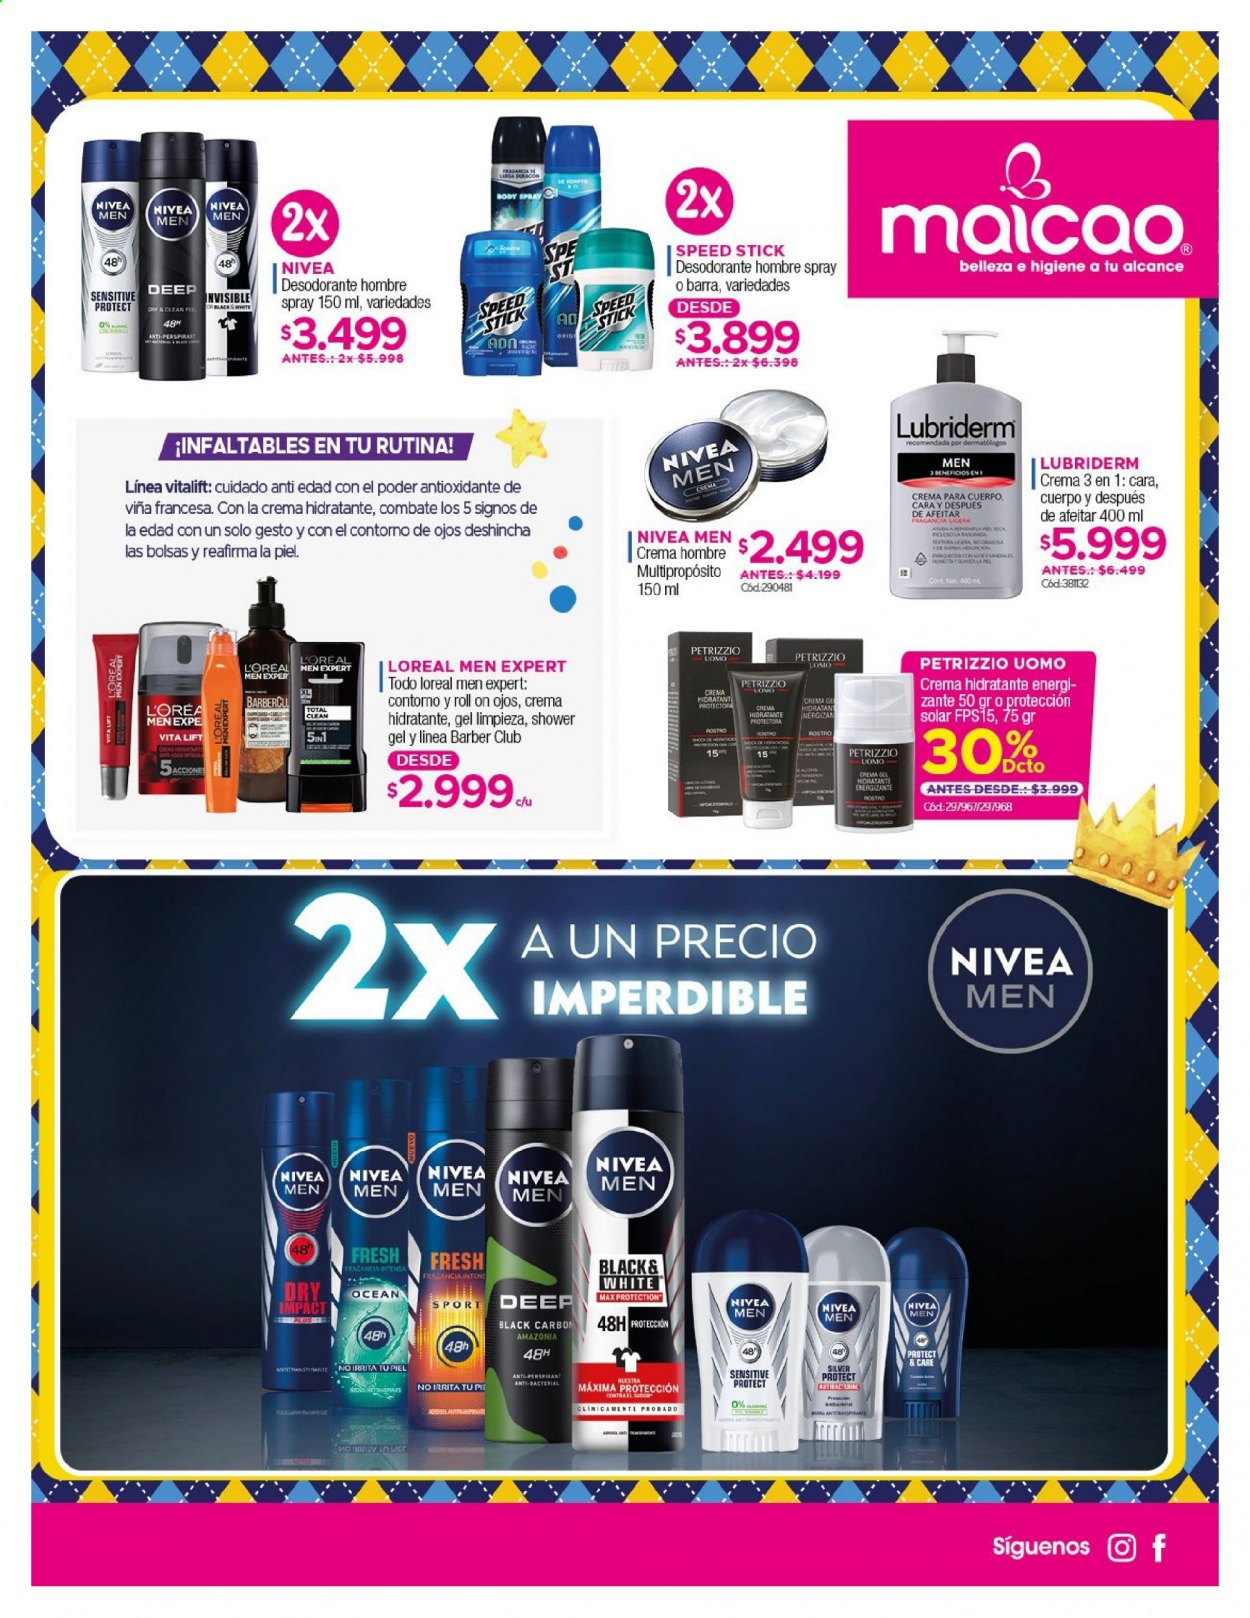 thumbnail - Catálogo Maicao - 01.06.2021 - 30.06.2021 - Ventas - L'Oréal, Nivea, desodorante de bola, Lubriderm, gel hidratante, spray corporal, desodorante. Página 7.